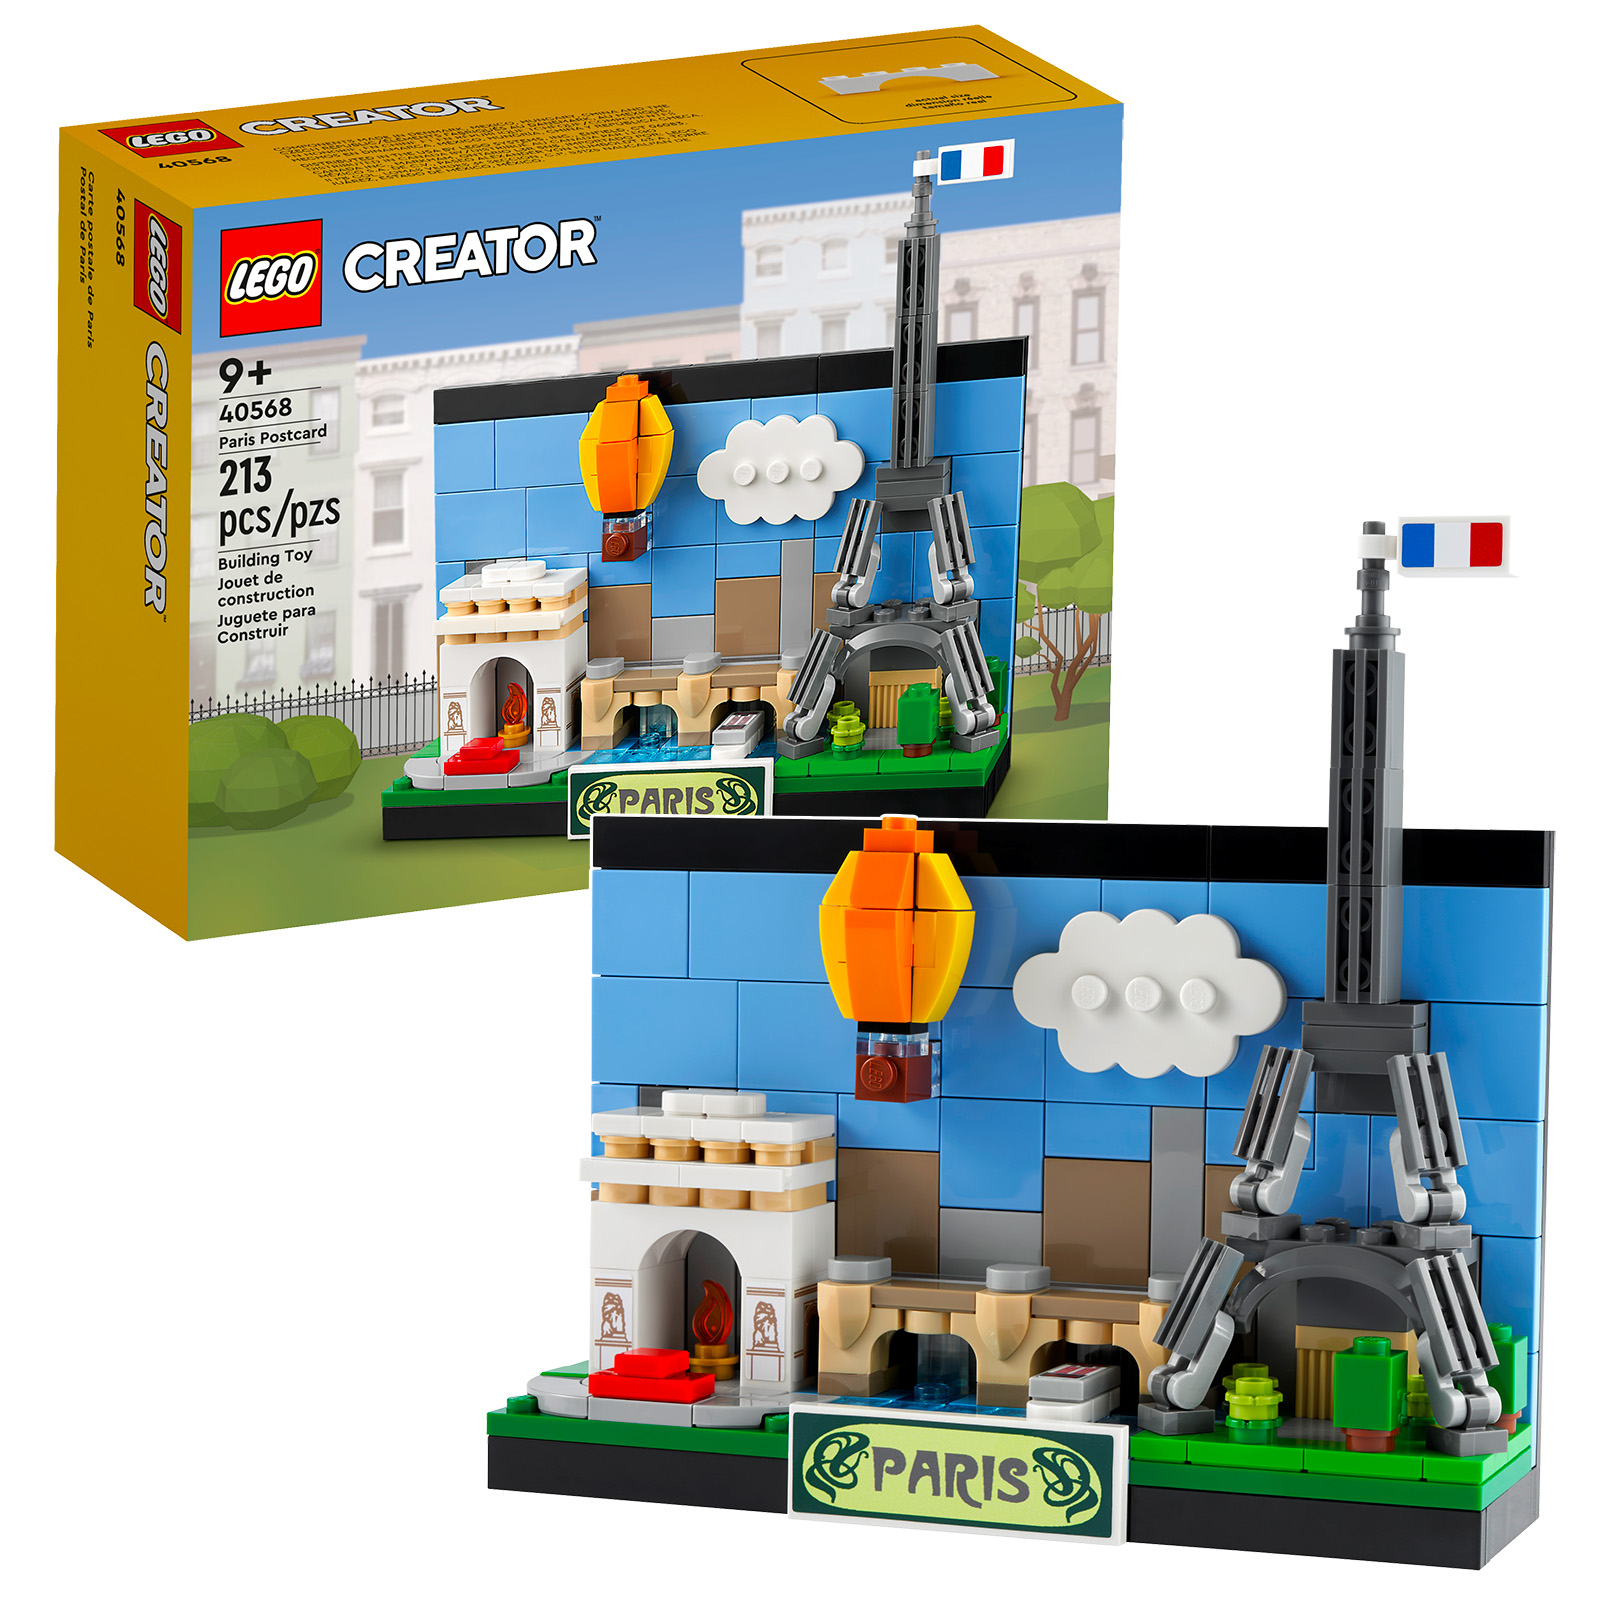 LEGO 40568 Paris Postcard review